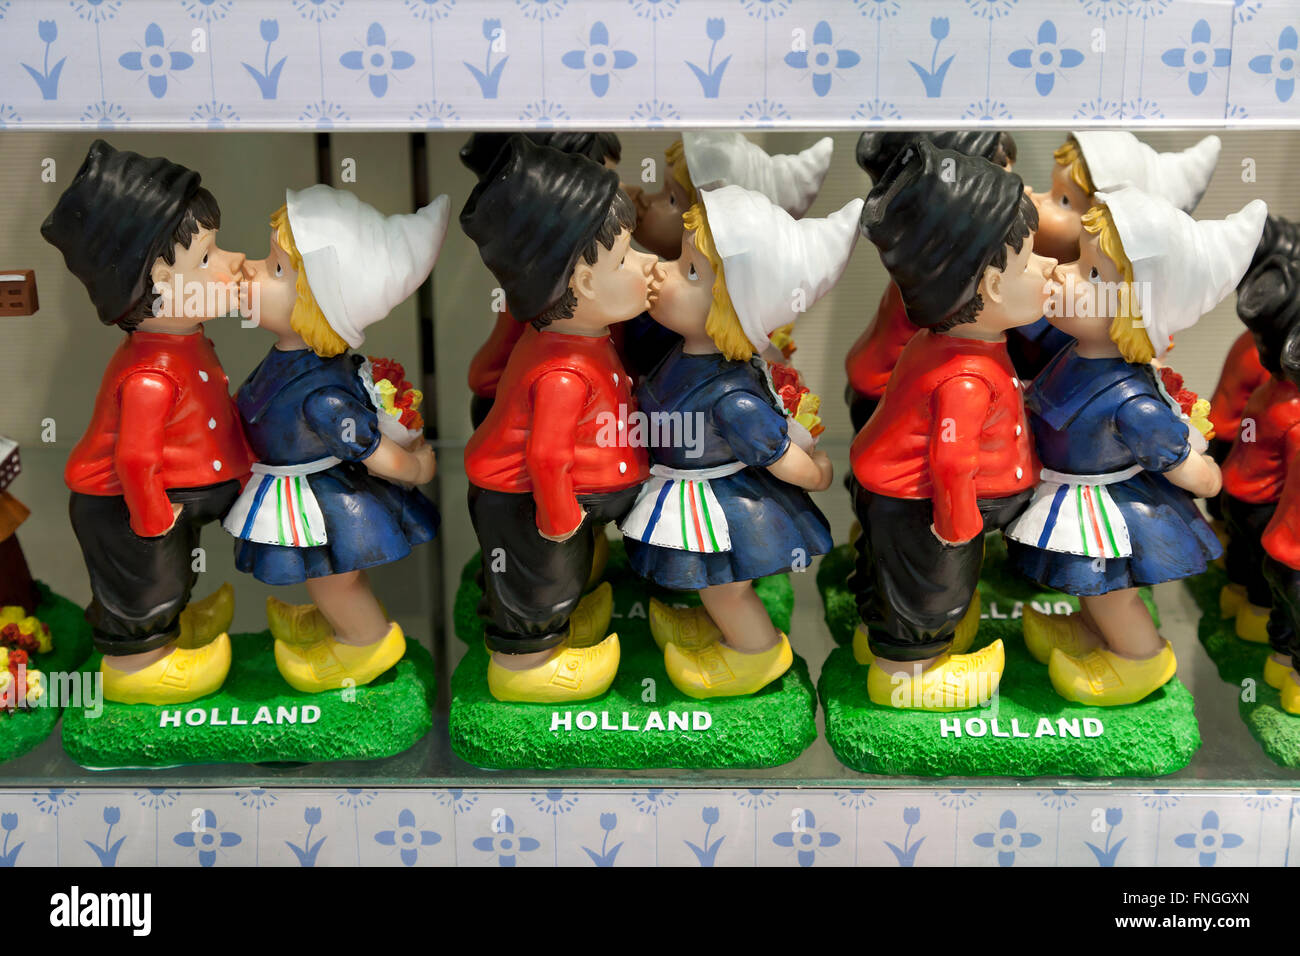 Les agriculteurs néerlandais figurine couple comme souvenir Banque D'Images